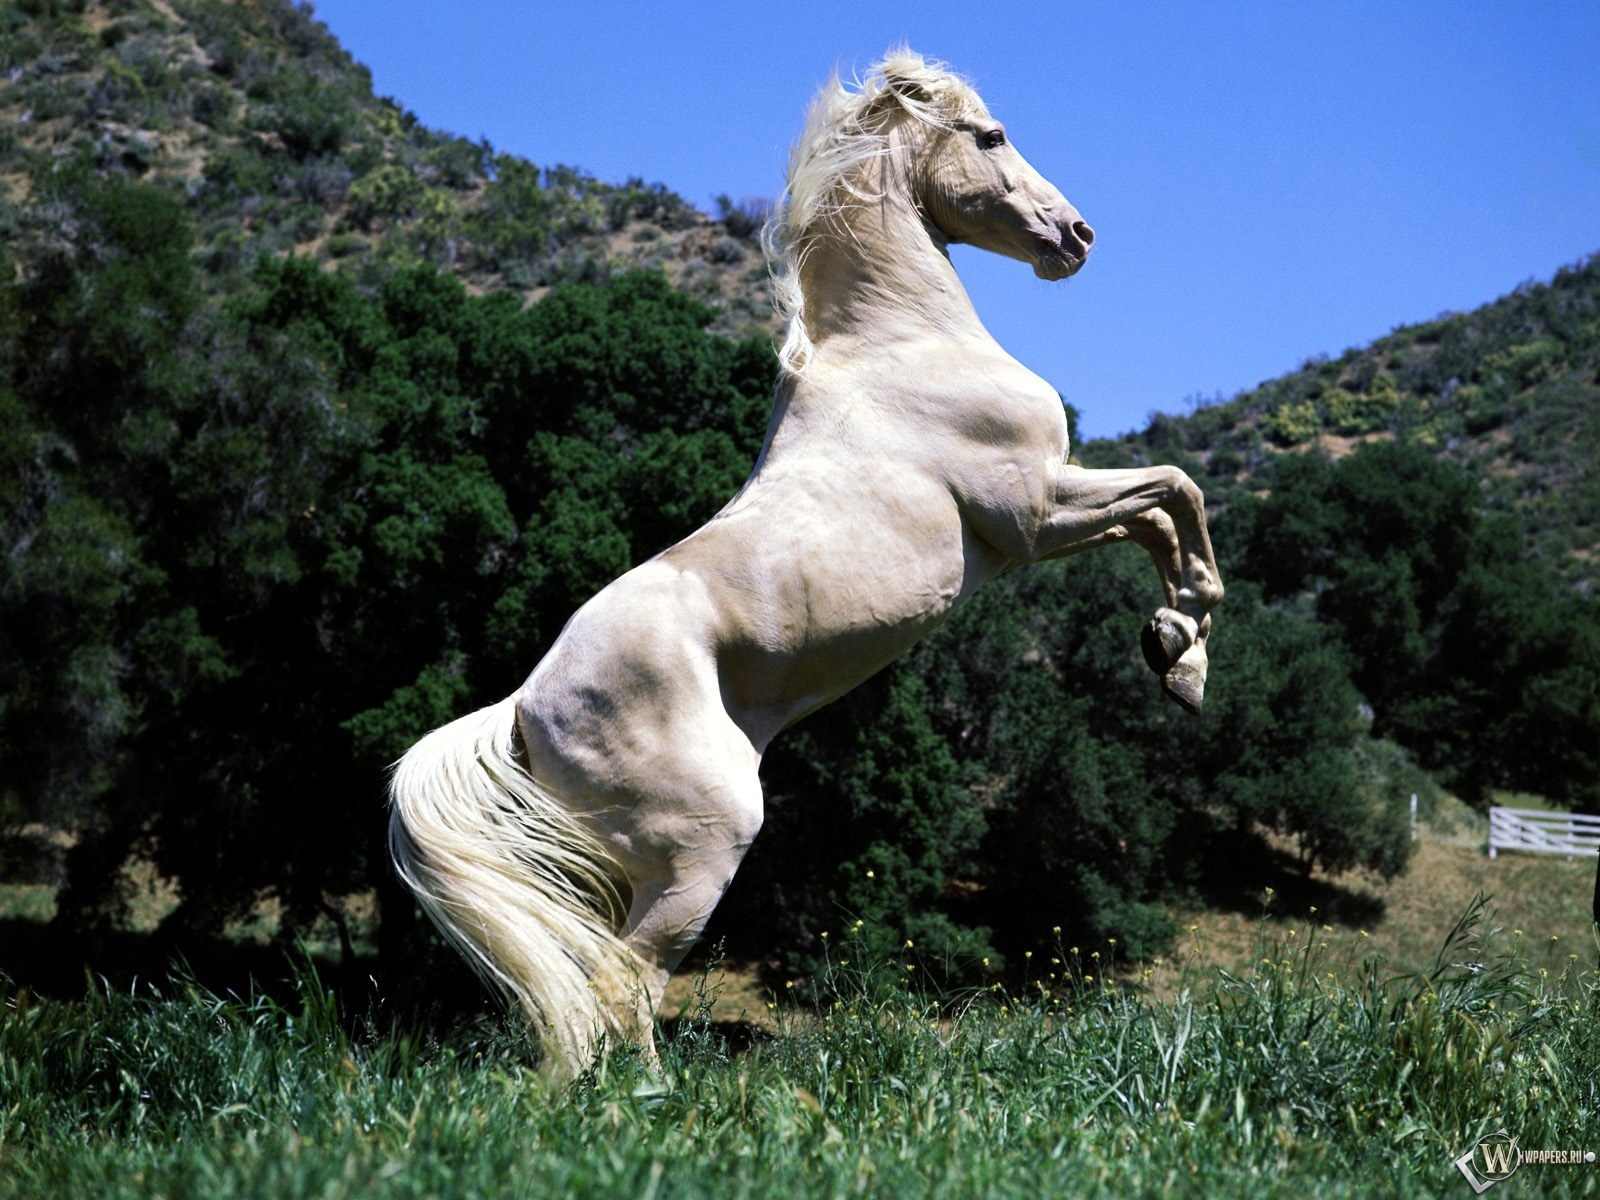 Horse pictures. Лошадь на дыбах. Белый конь. Красивые лошади. Конь встал на дыбы.